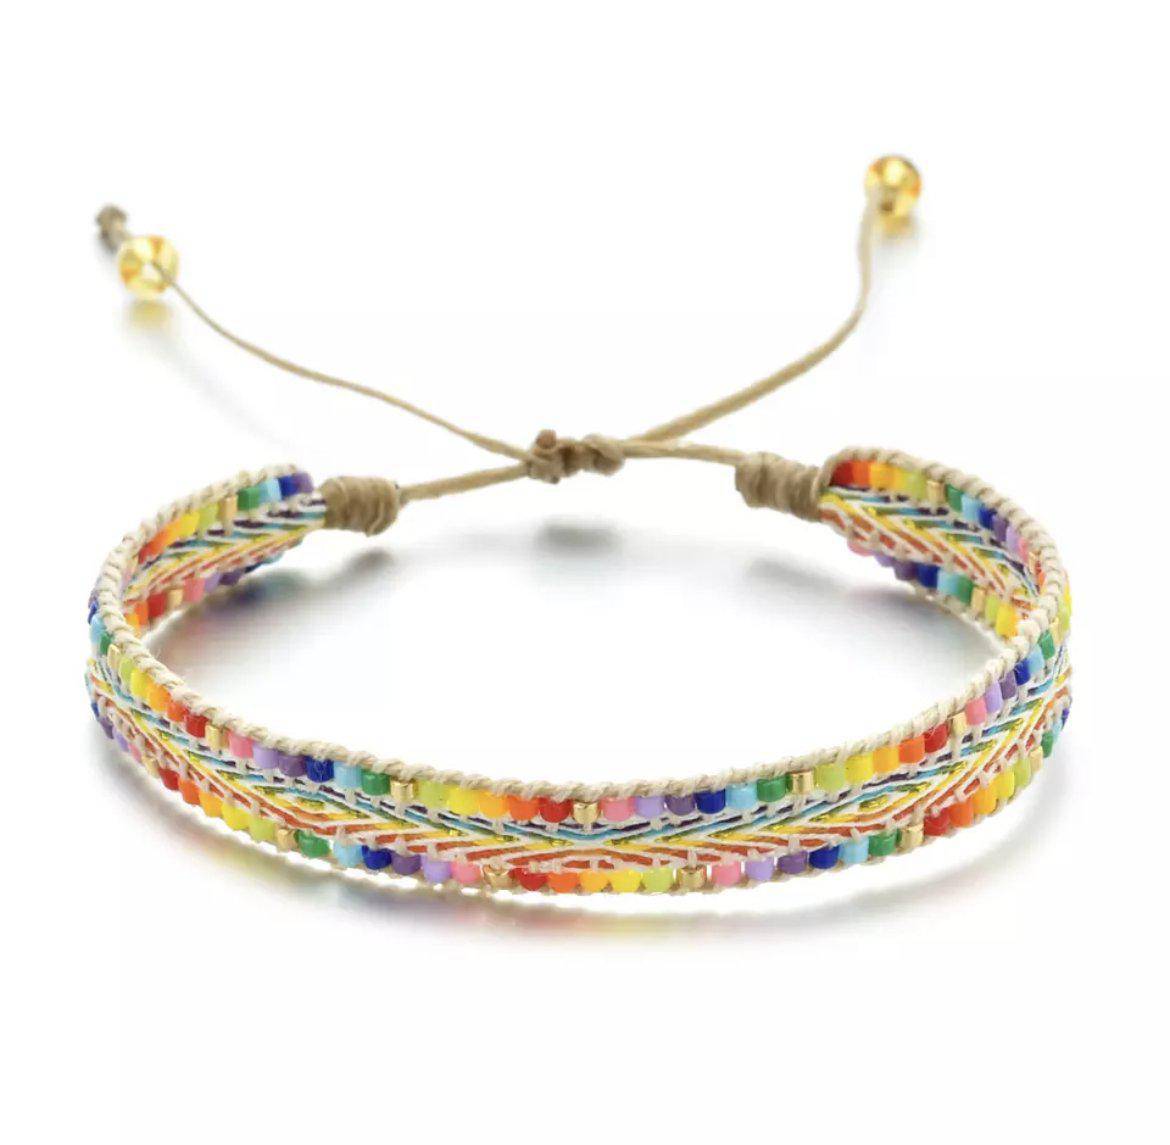 Rainbow Bright Beaded Woven Bracelet - Twinkle Twinkle Little One